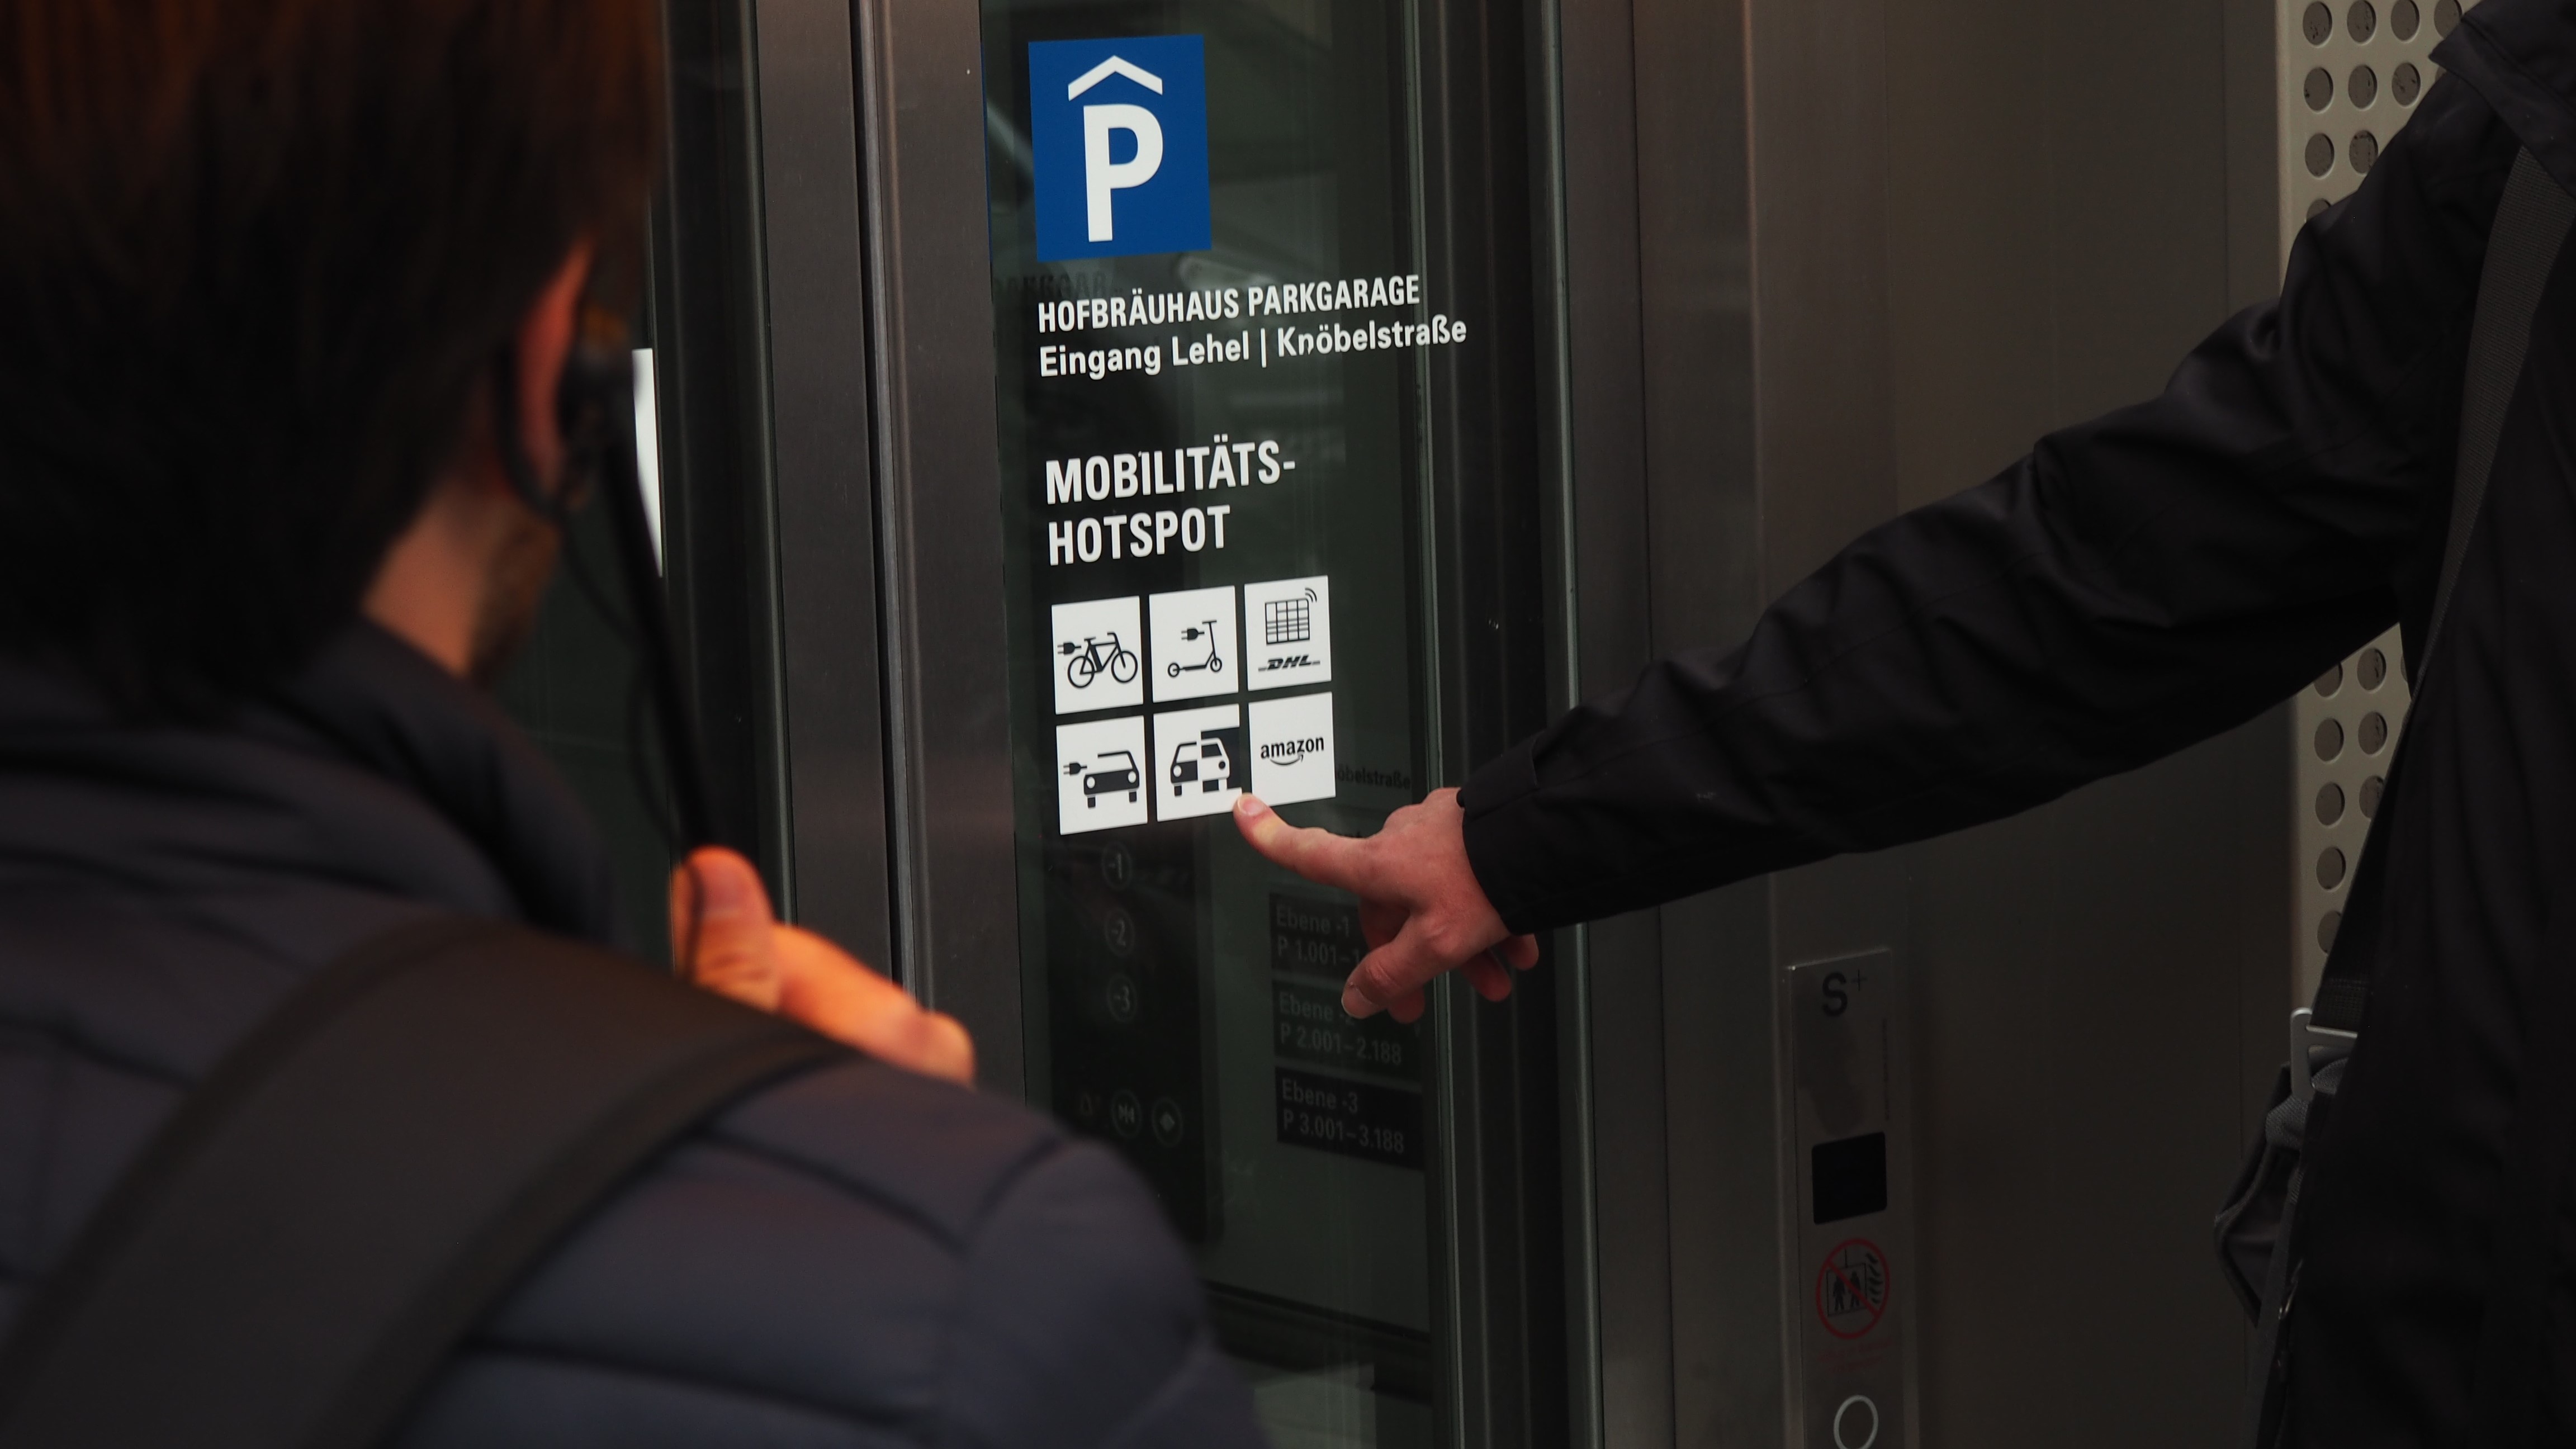 Ein Finger zeigt auf Mobilitätssymbole an einer Scheibes eines Aufzugs.